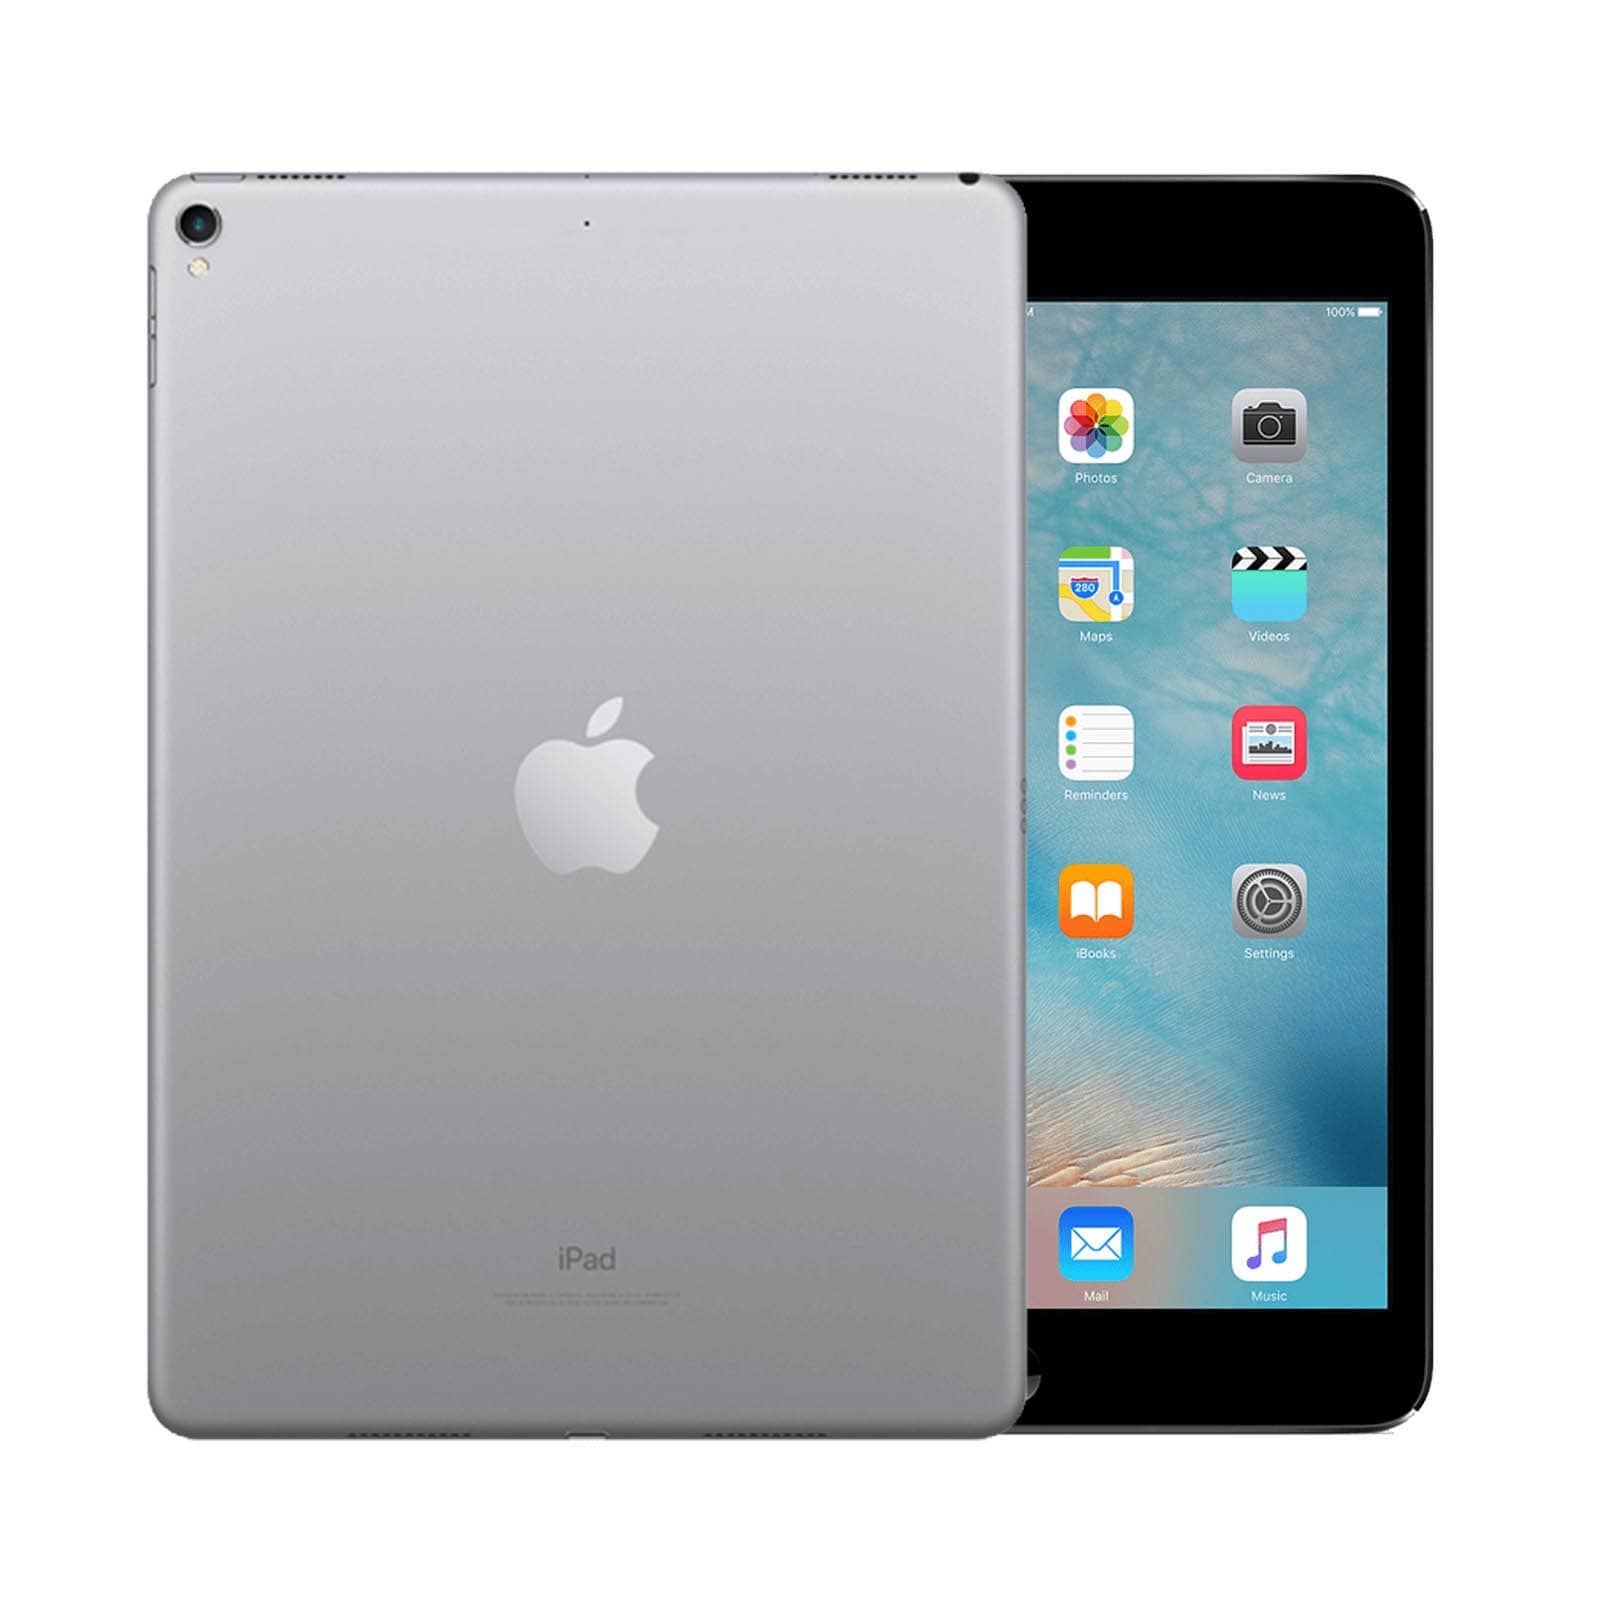 iPad Pro 9.7 Inch 256GB Space Grey Very Good - WiFi 256GB Space Grey Very Good